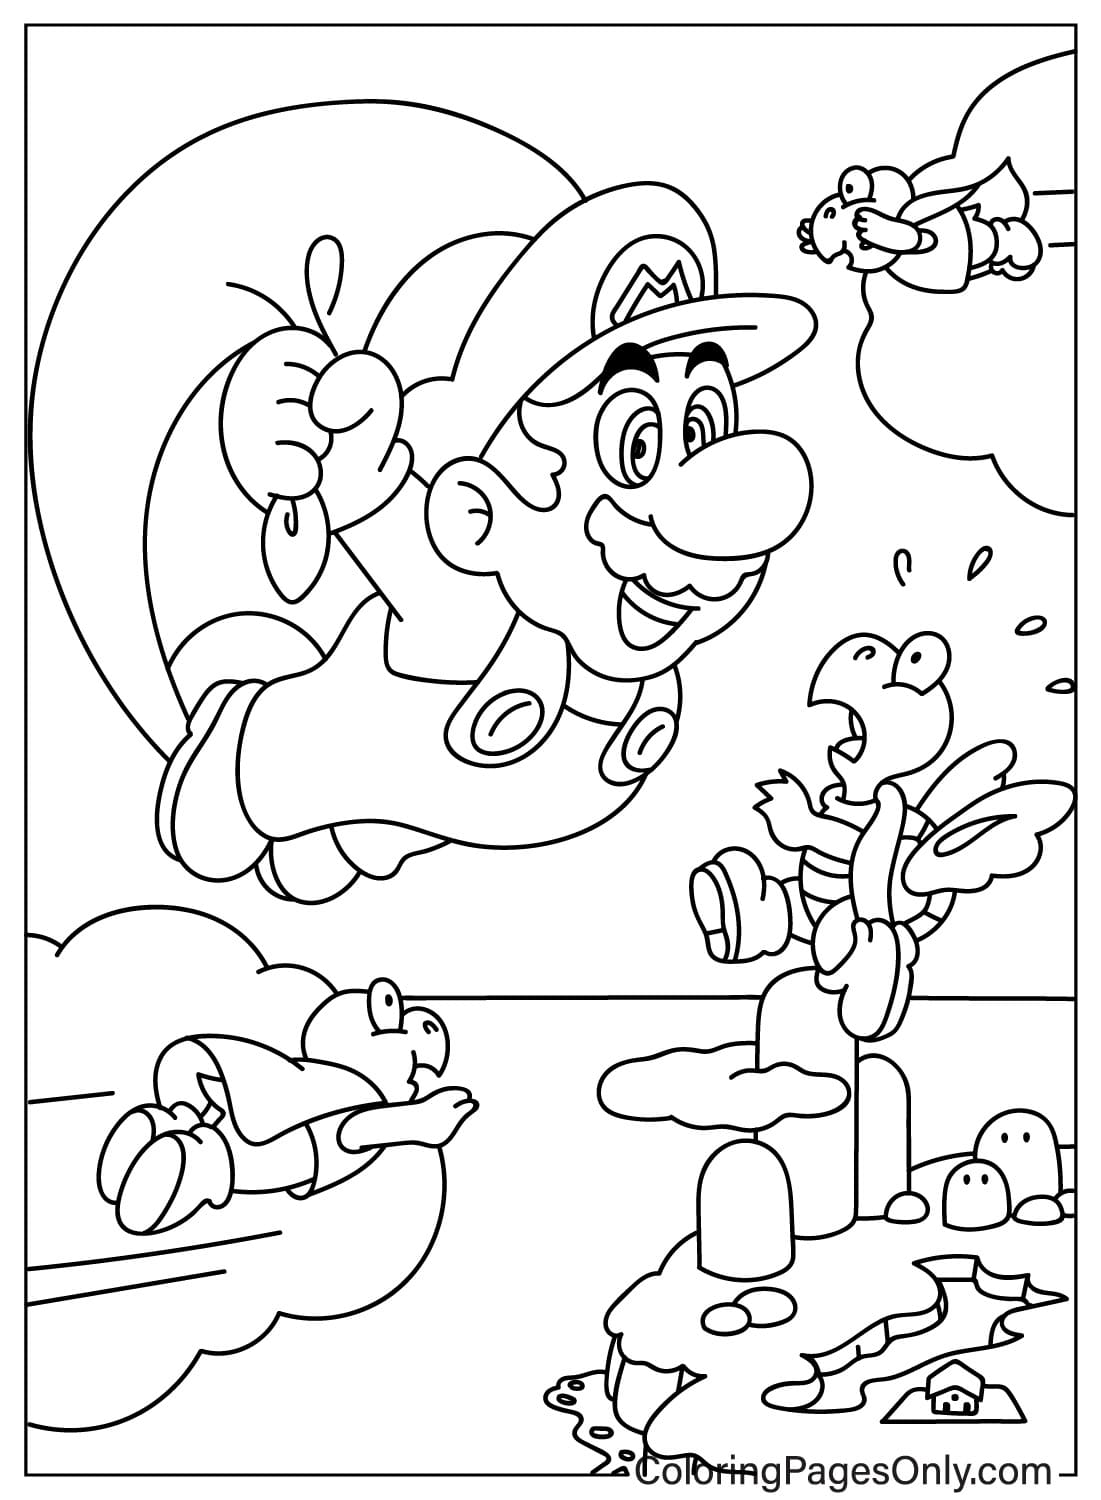 Dibujo de Mario y Koopa Troopa para colorear